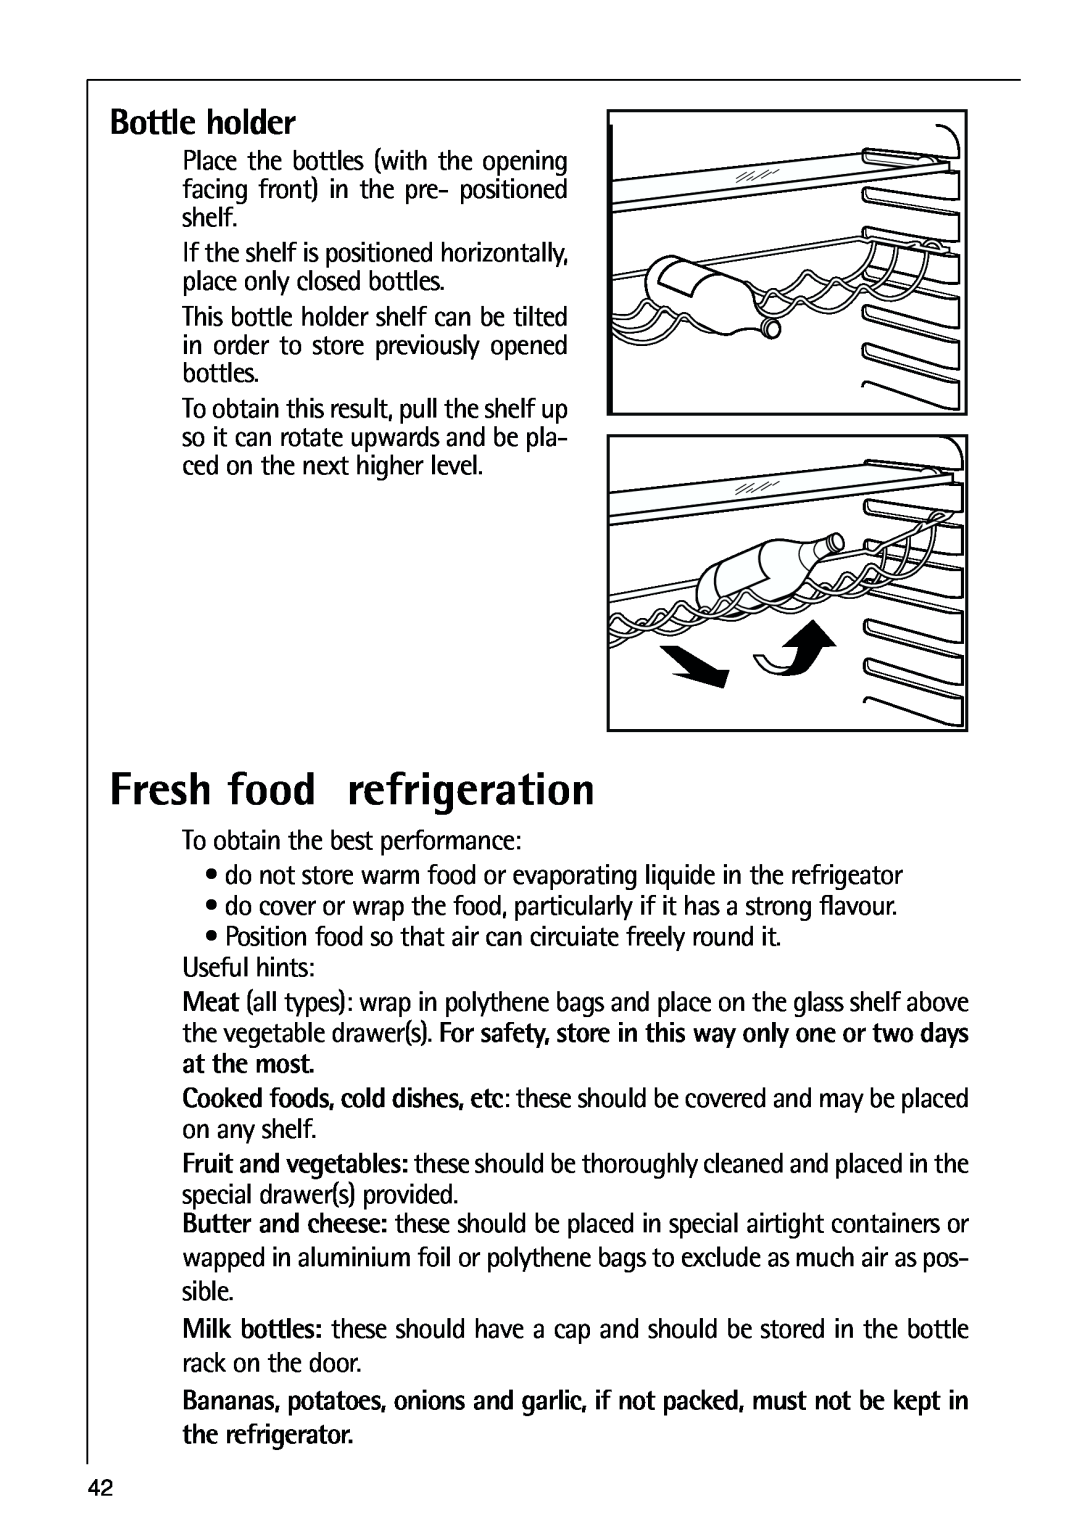 AEG 80318-5 KG user manual Fresh food refrigeration, Bottle holder 